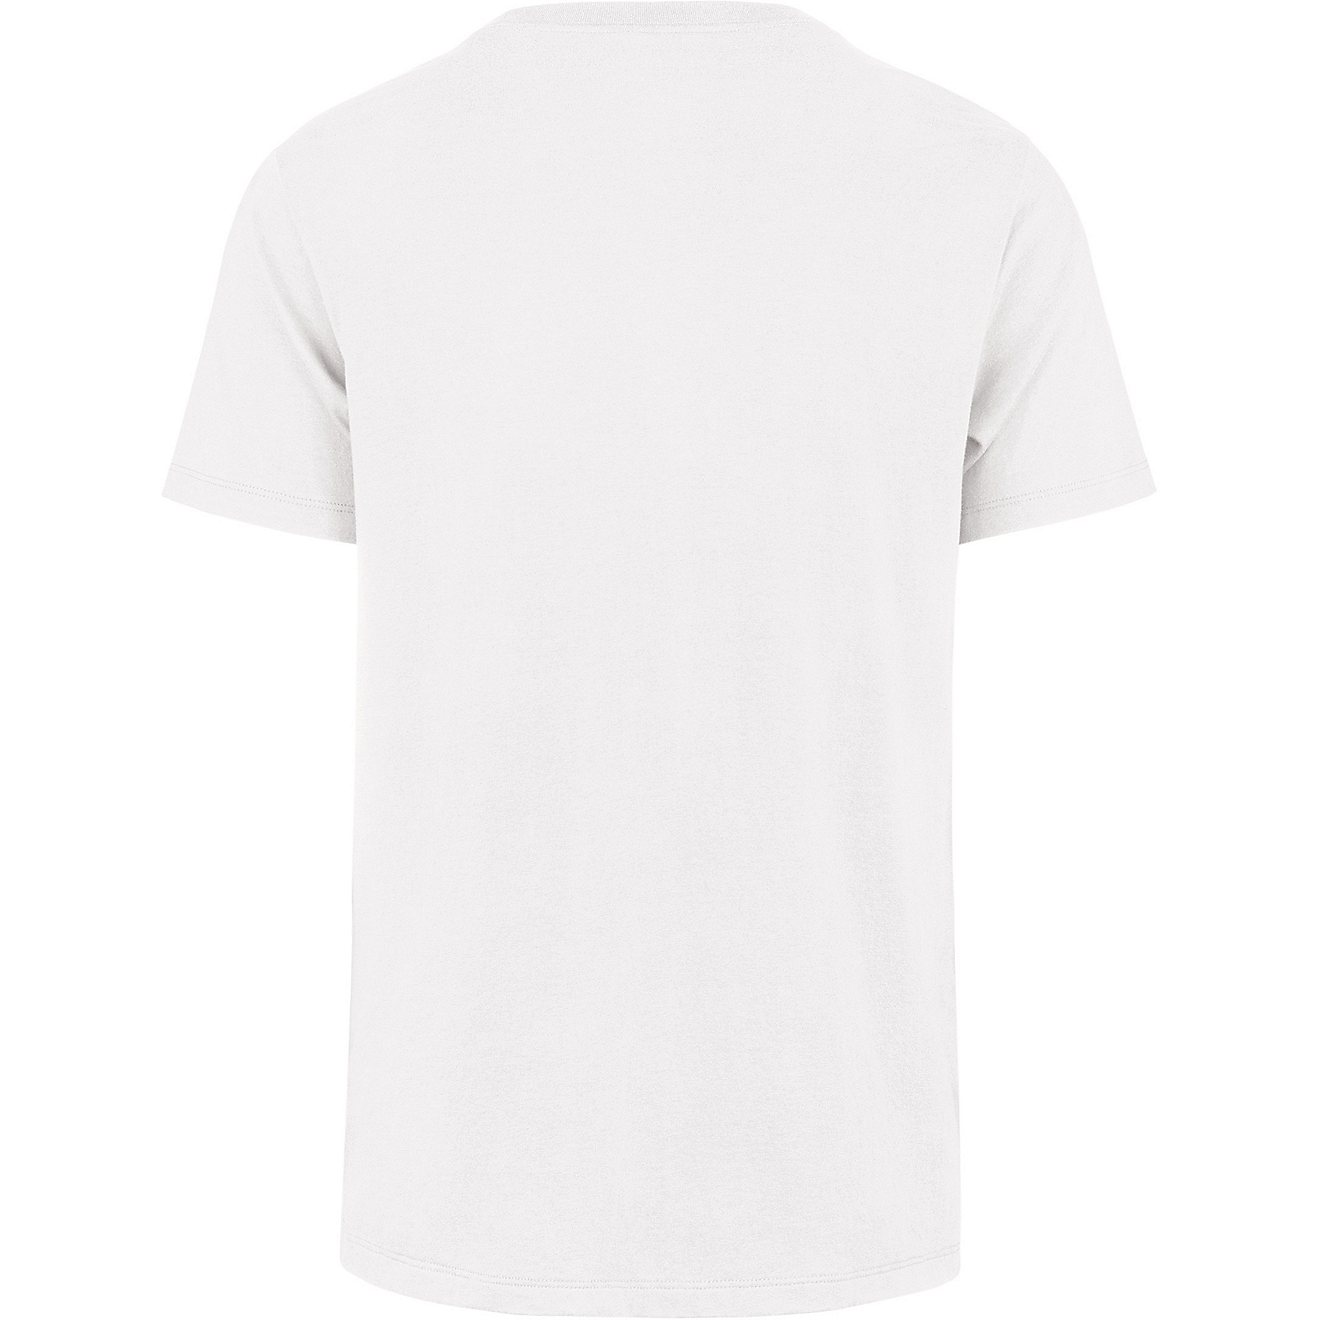 '47 Men's Texas Rangers City Connect Premier Franklin T-shirt                                                                    - view number 2